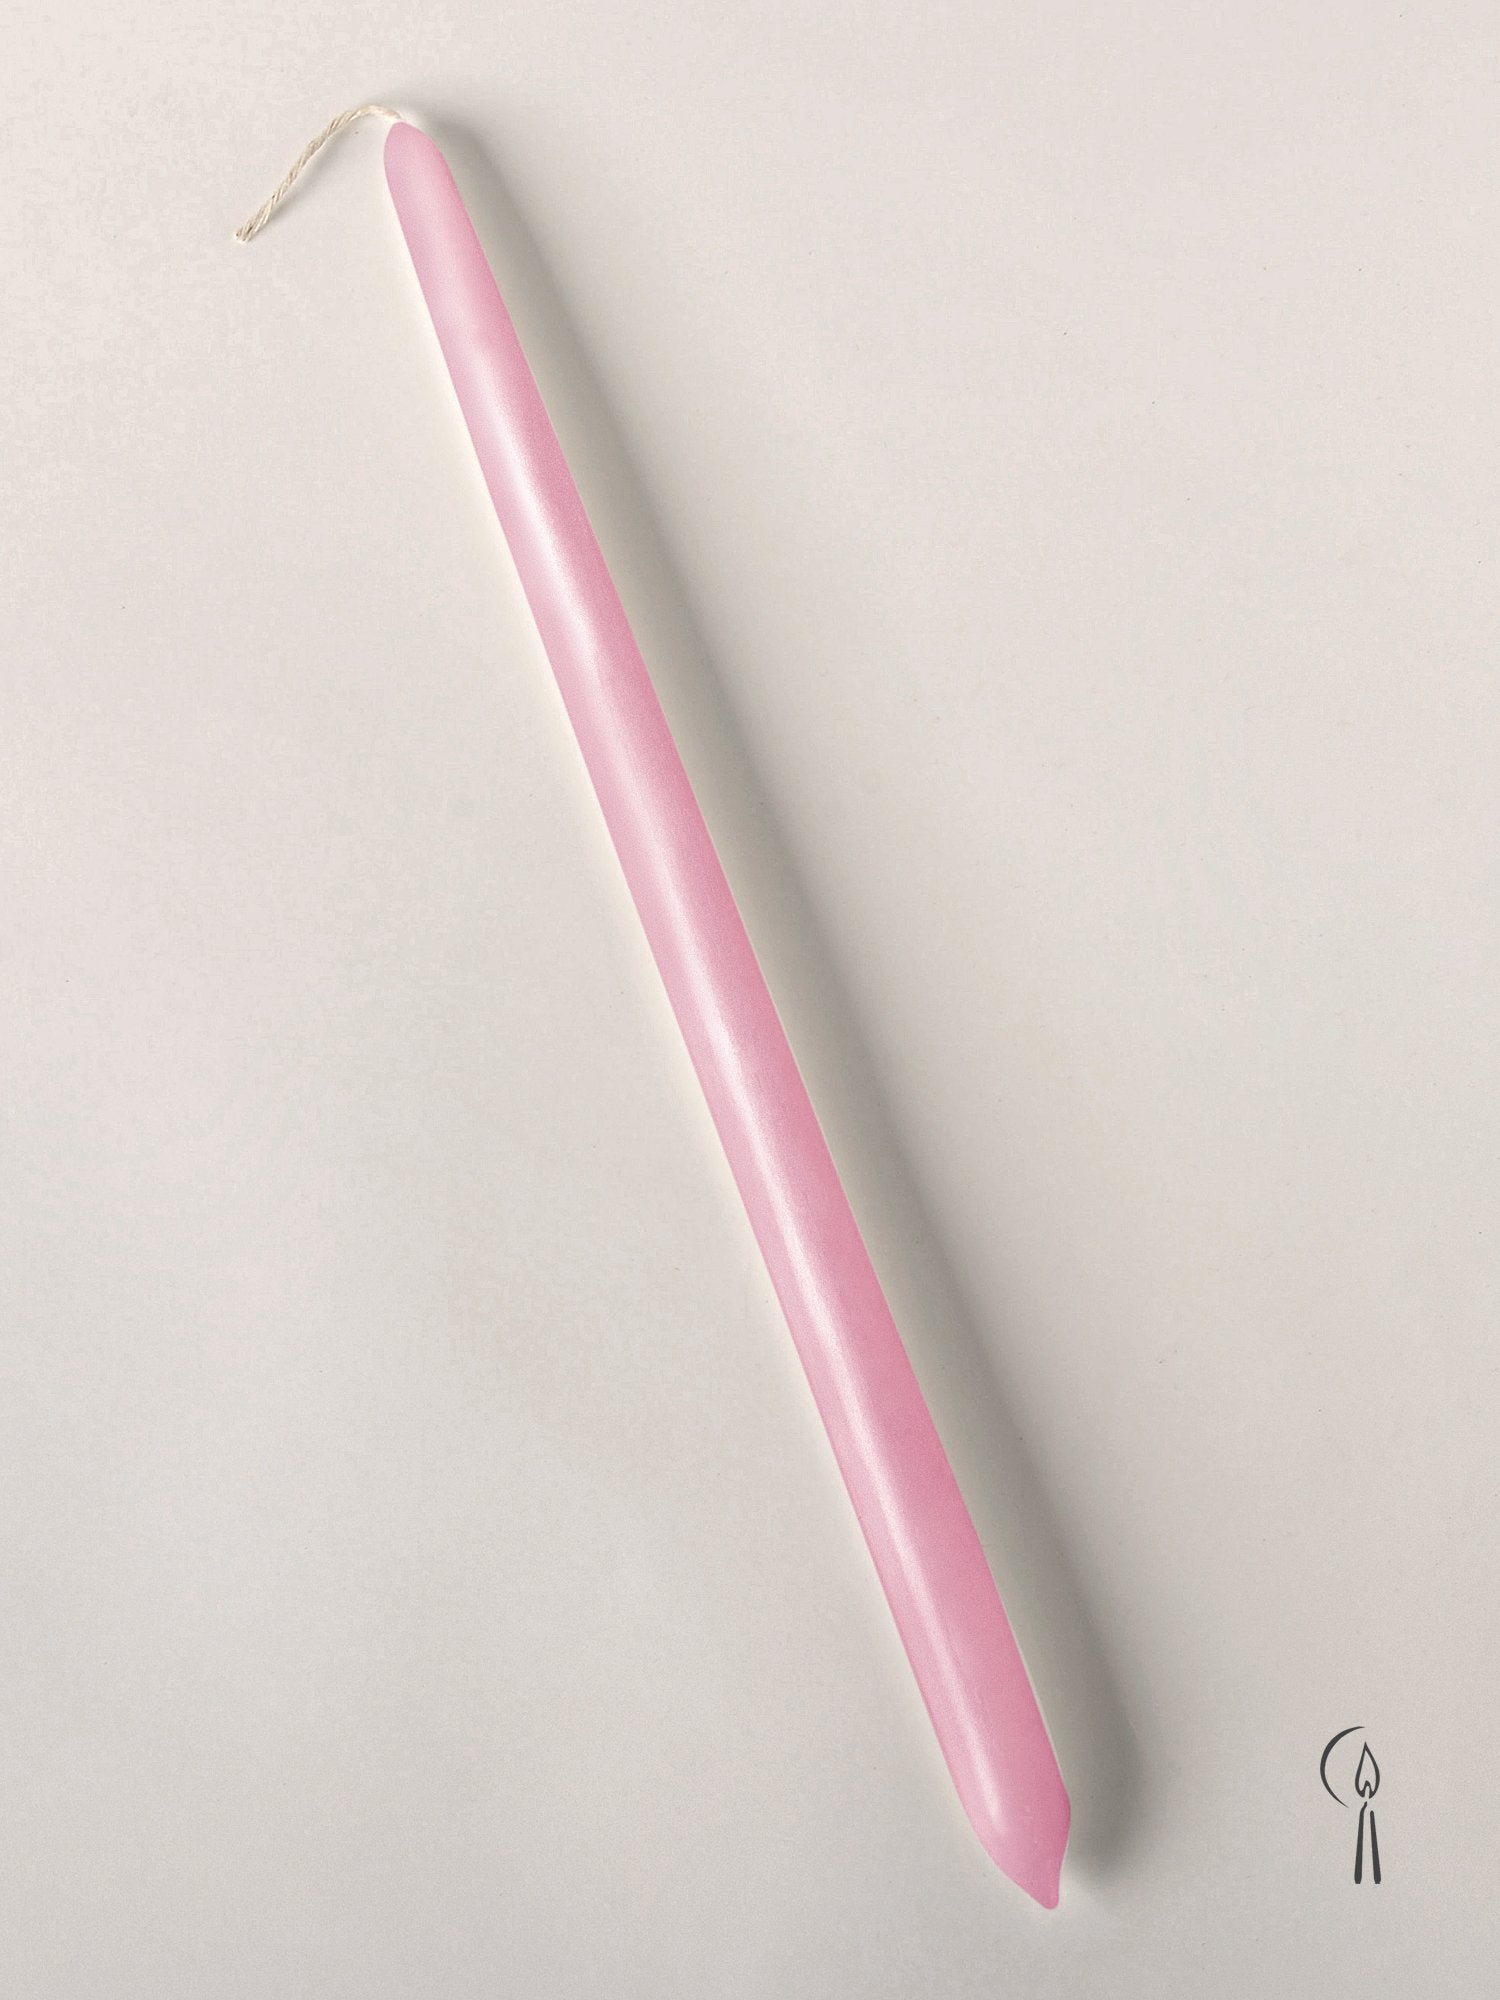 Λαμπάδα Αρωματική Κλασσική Ροζ 32cm